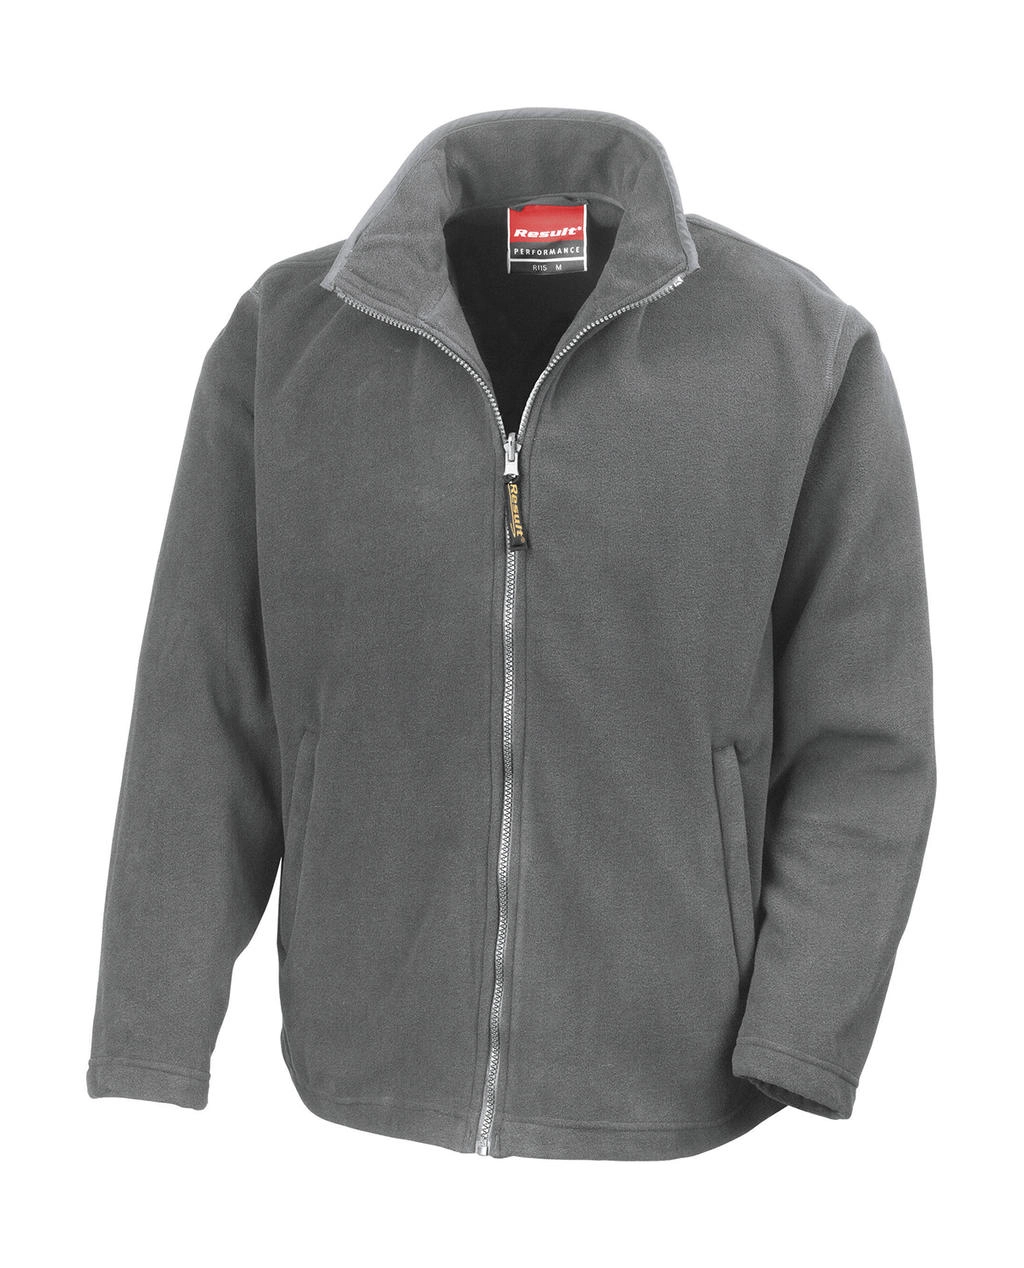 Horizon High Grade Microfleece Jacket zum Besticken und Bedrucken in der Farbe Dove Grey mit Ihren Logo, Schriftzug oder Motiv.